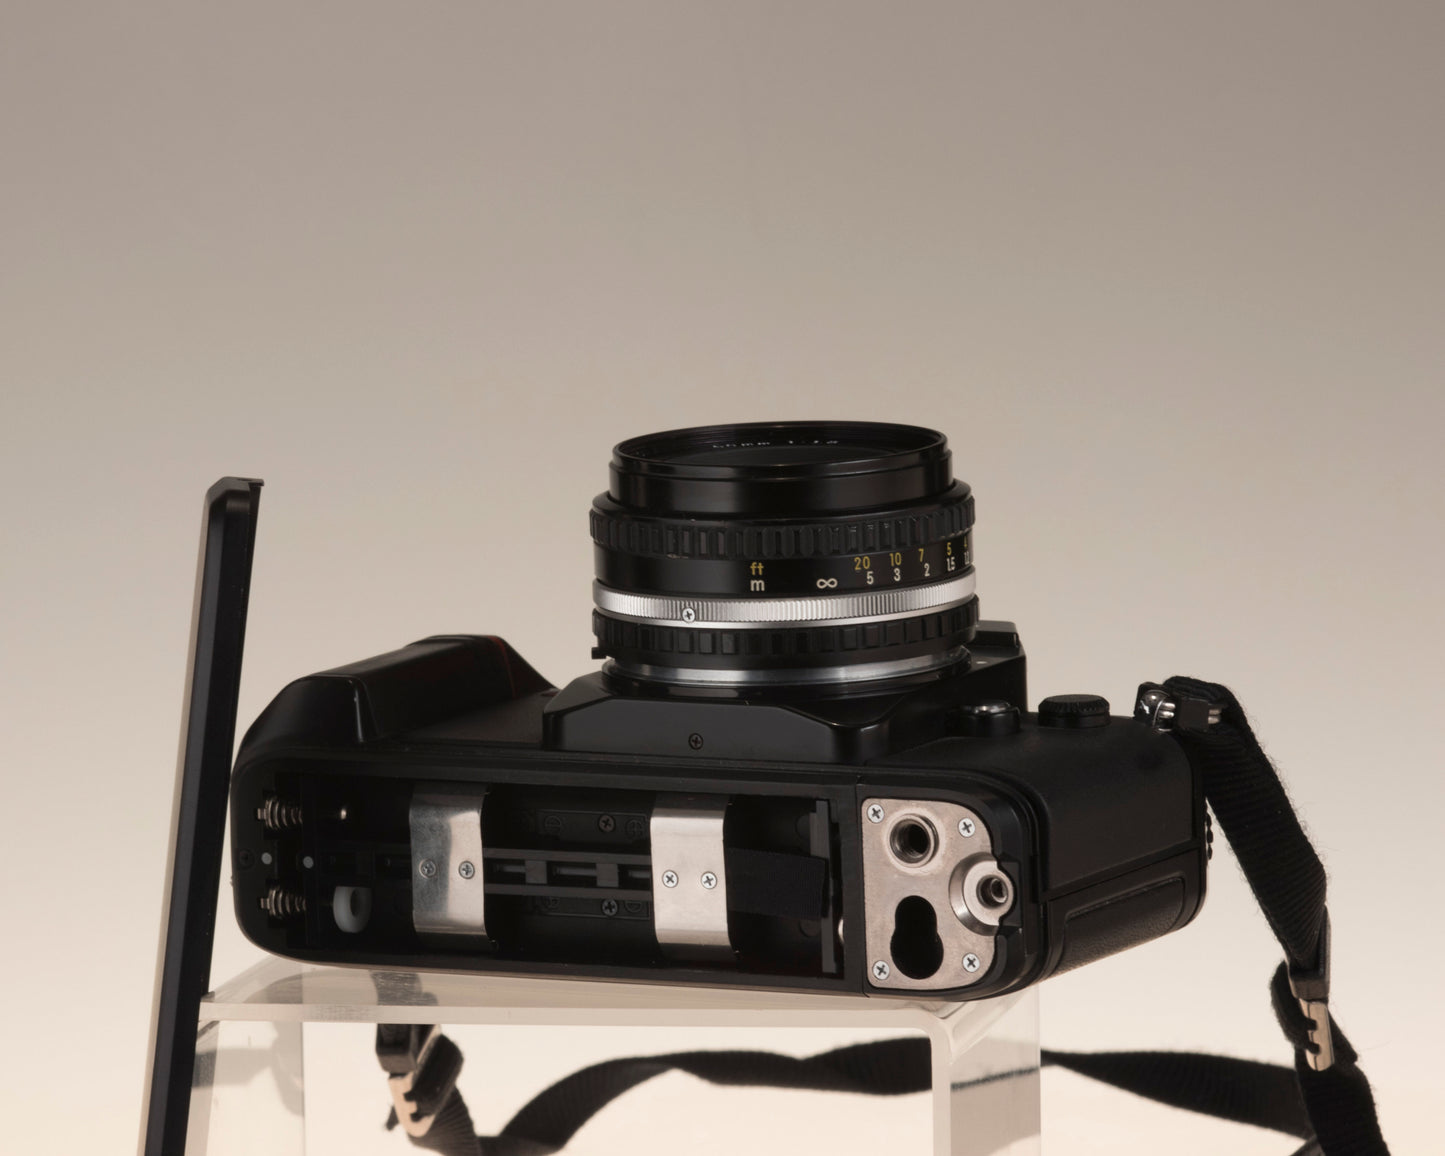 Reflex Nikon N2000 35 mm + objectif 50 mm f1.8